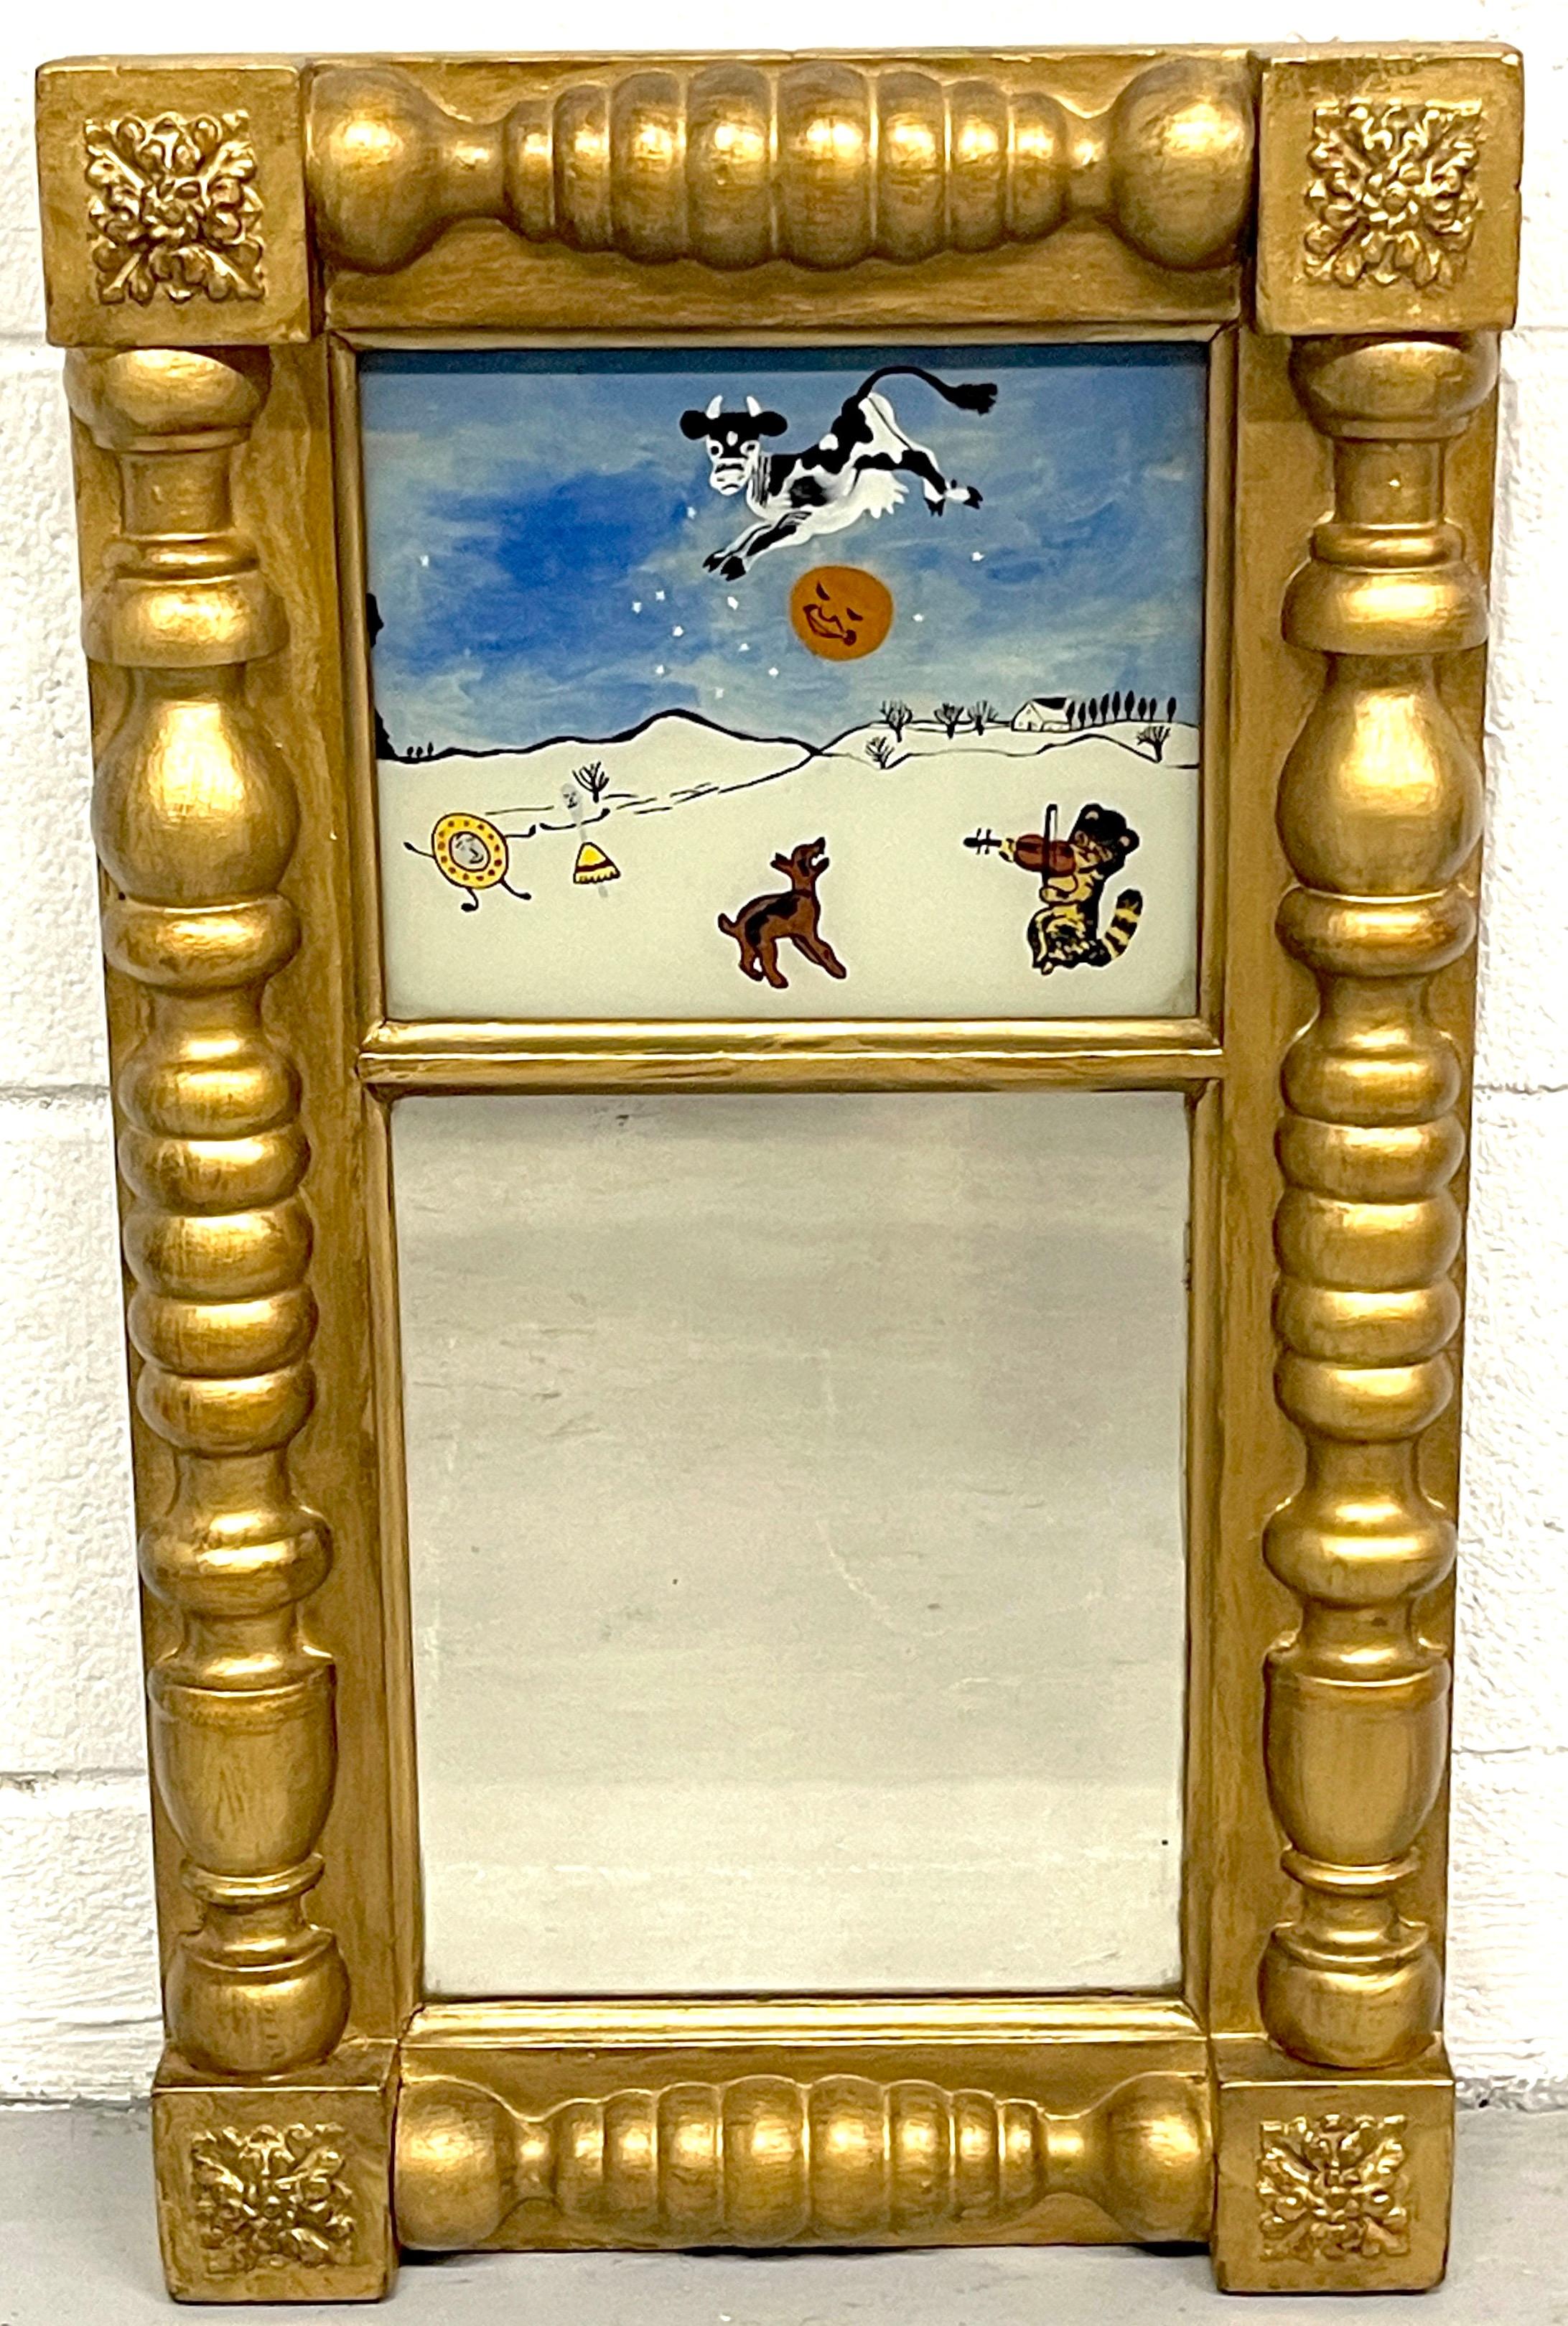 Antiker englischer rückseitig bemalter Kinderspiegel „Hey Diddle Diddle“ Eglomise 
England, ca. 1850

Eine echte Rarität, ein kleiner vergoldeter Eglomise-Spiegel, der den englischen Kinderreim Hey diddle, diddle! darstellt.
Fein ausgeführt mit